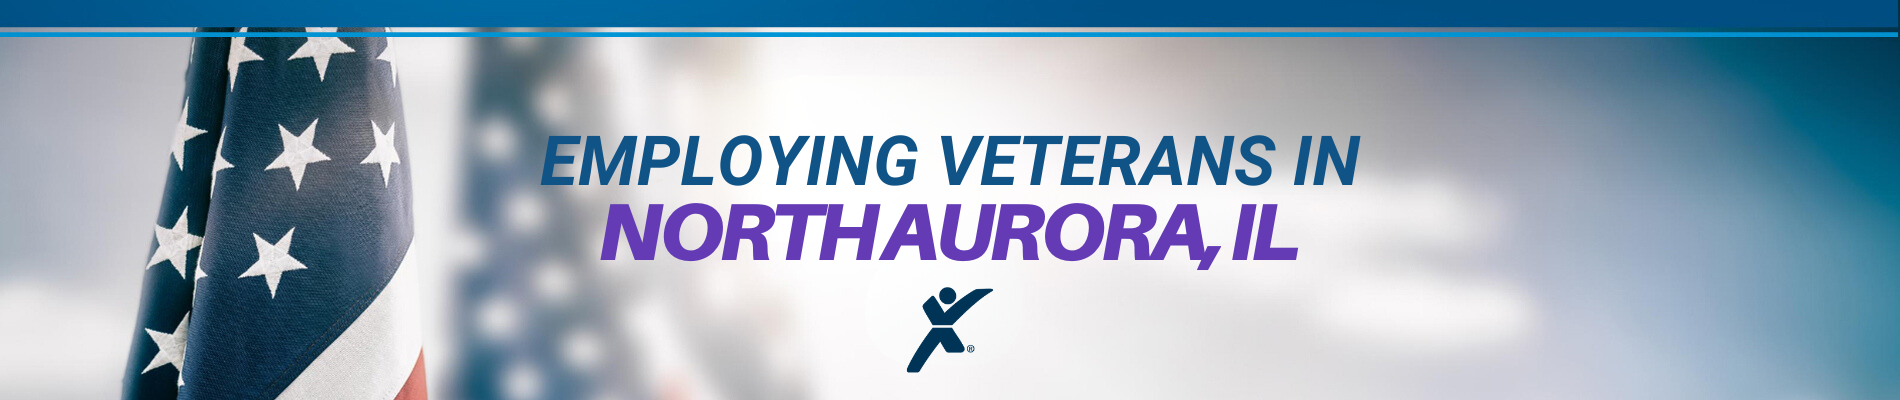 North Aurora, IL Veterans Banner